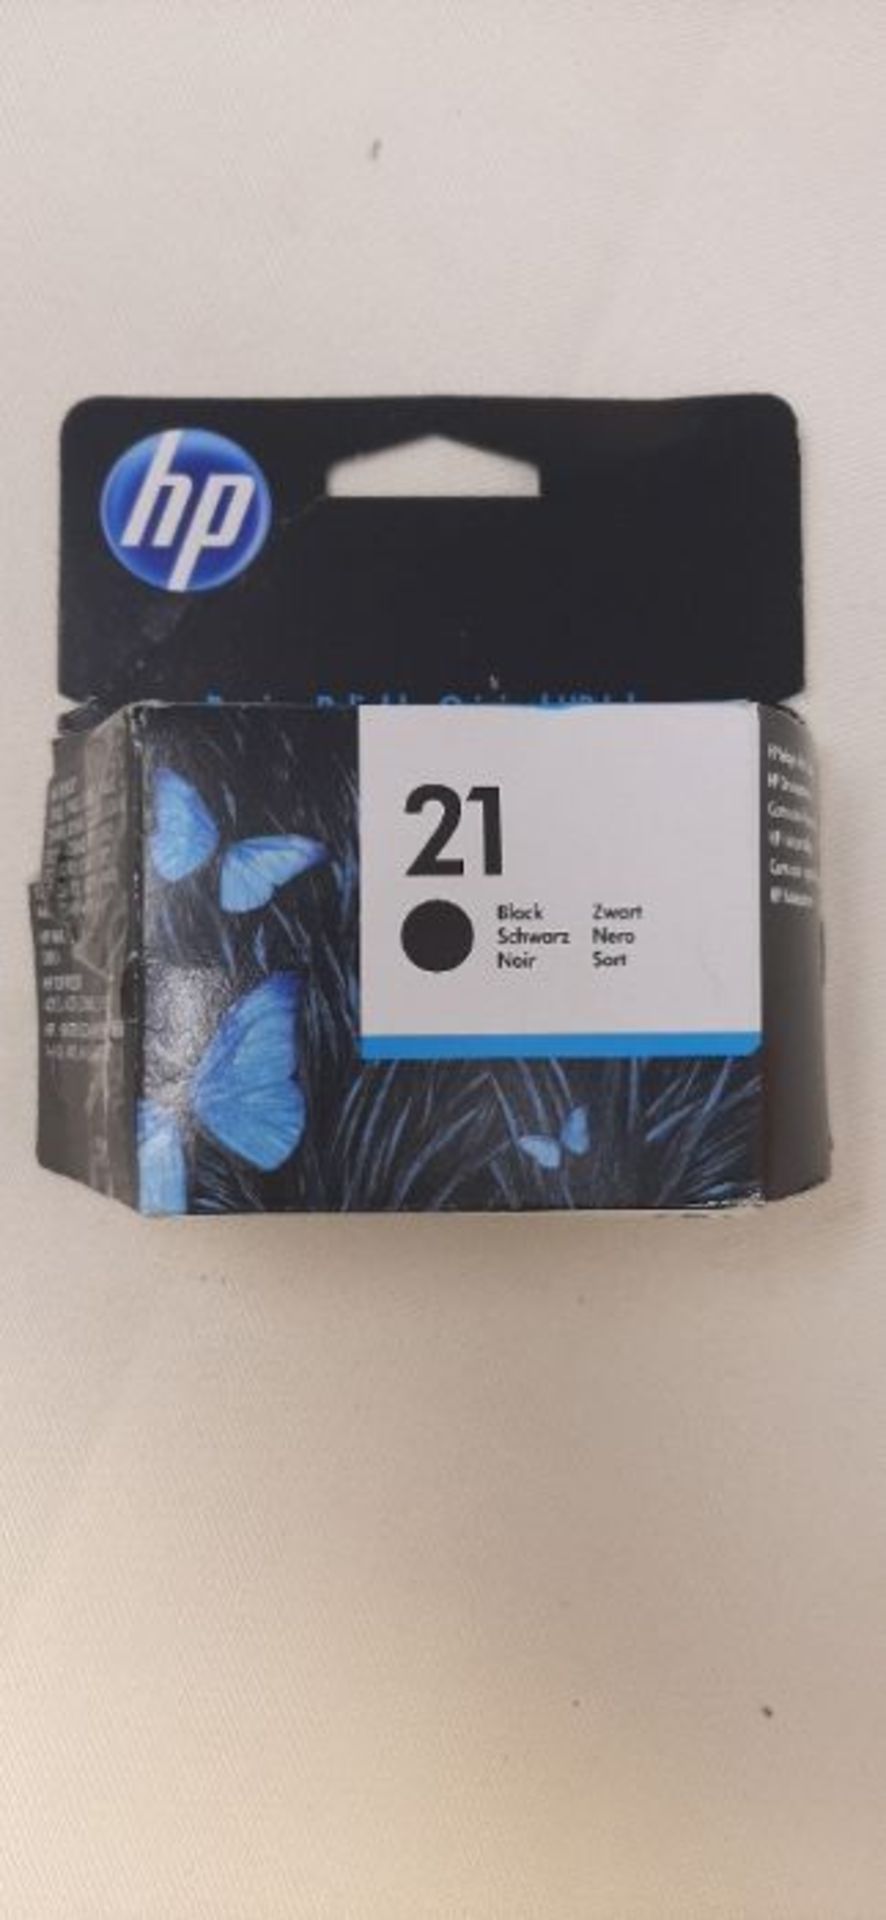 HP C9351AE 21 Original Ink Cartridge, Black, Single Pack - Image 2 of 2